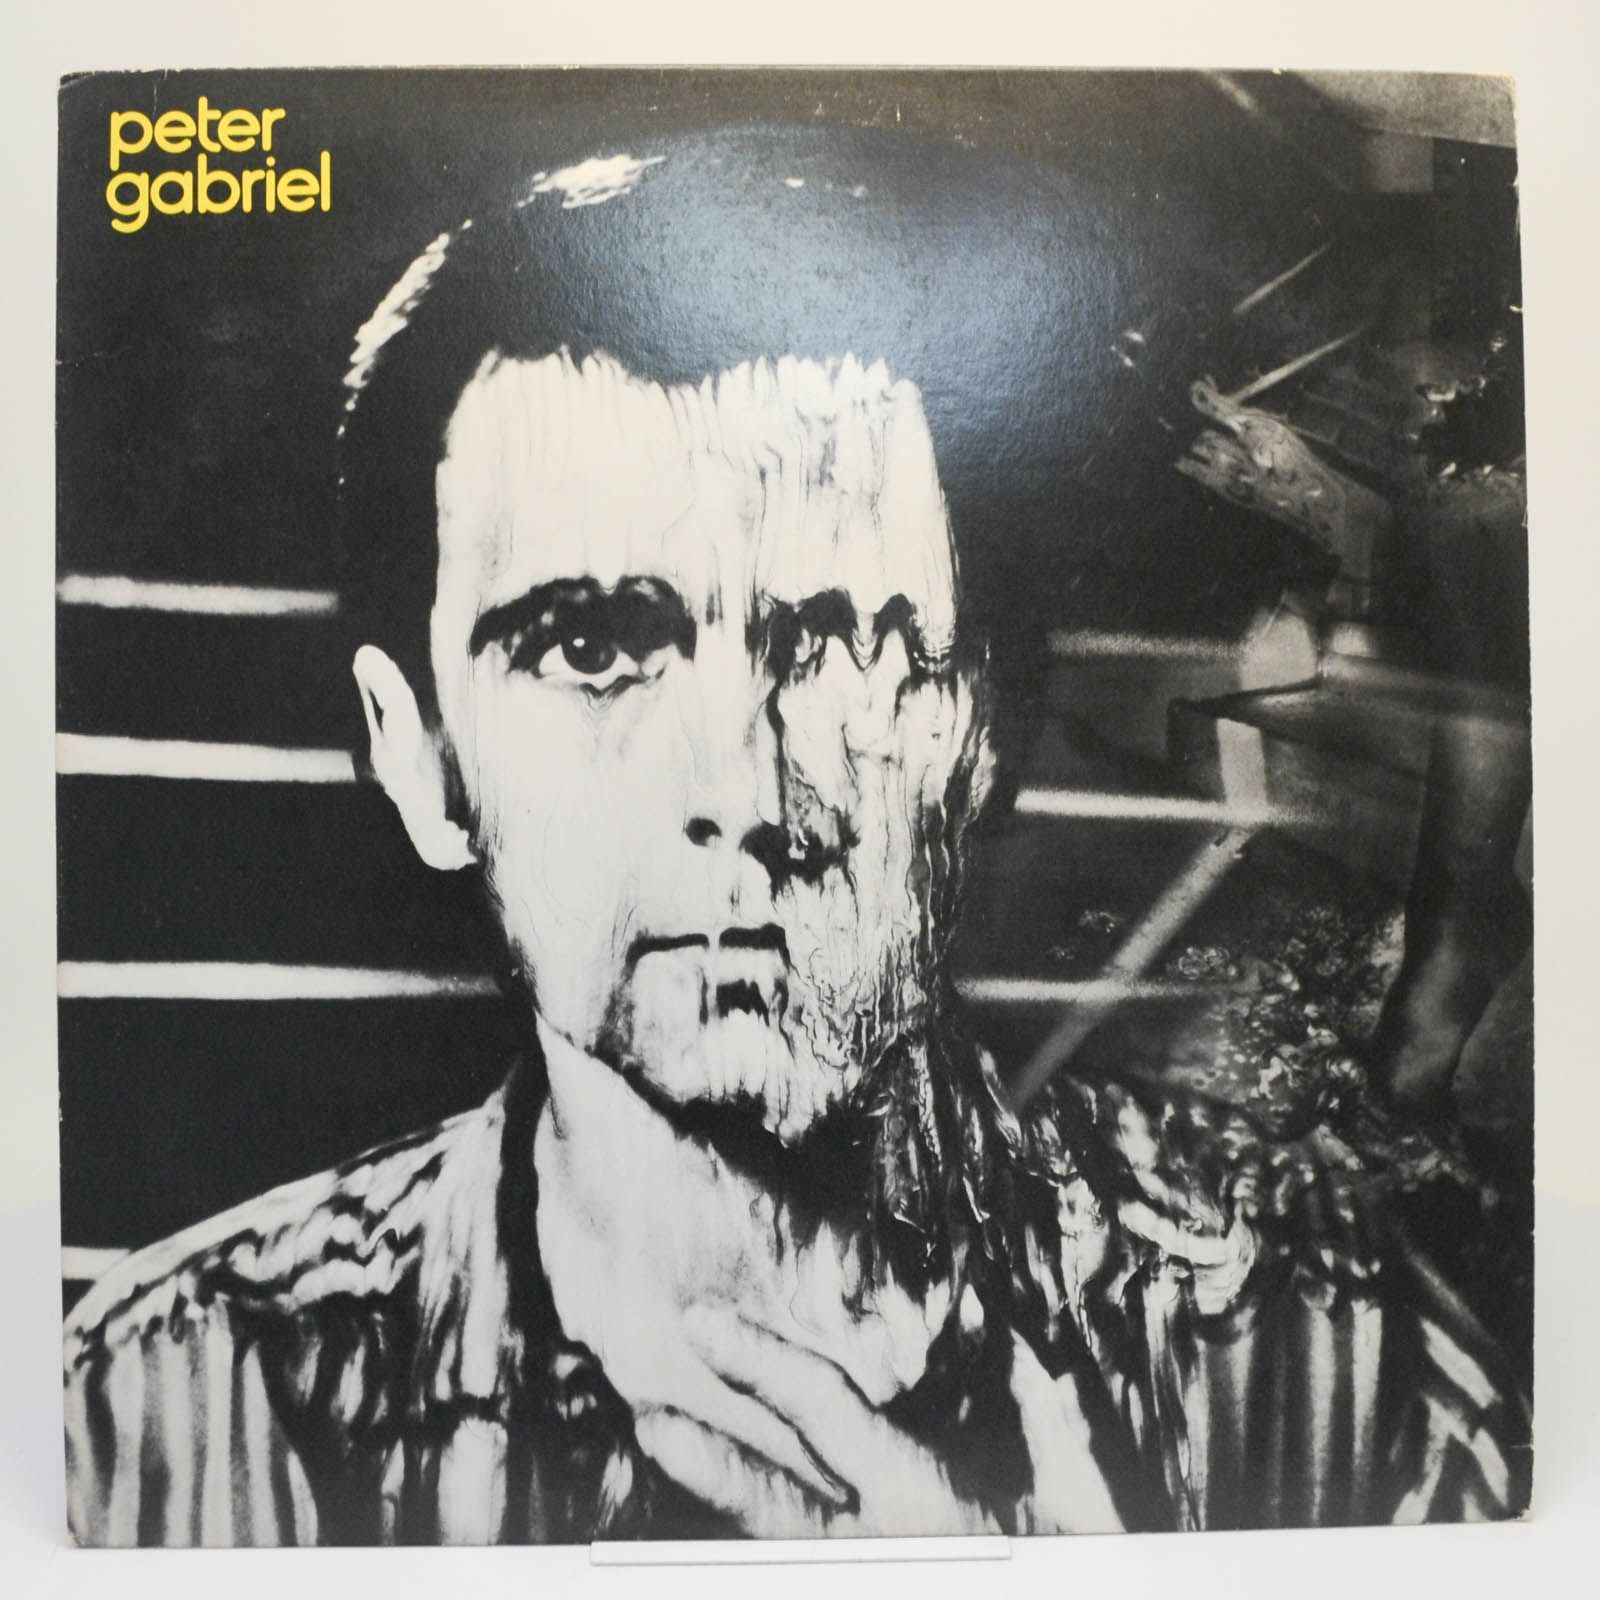 Peter Gabriel — Peter Gabriel, 1980